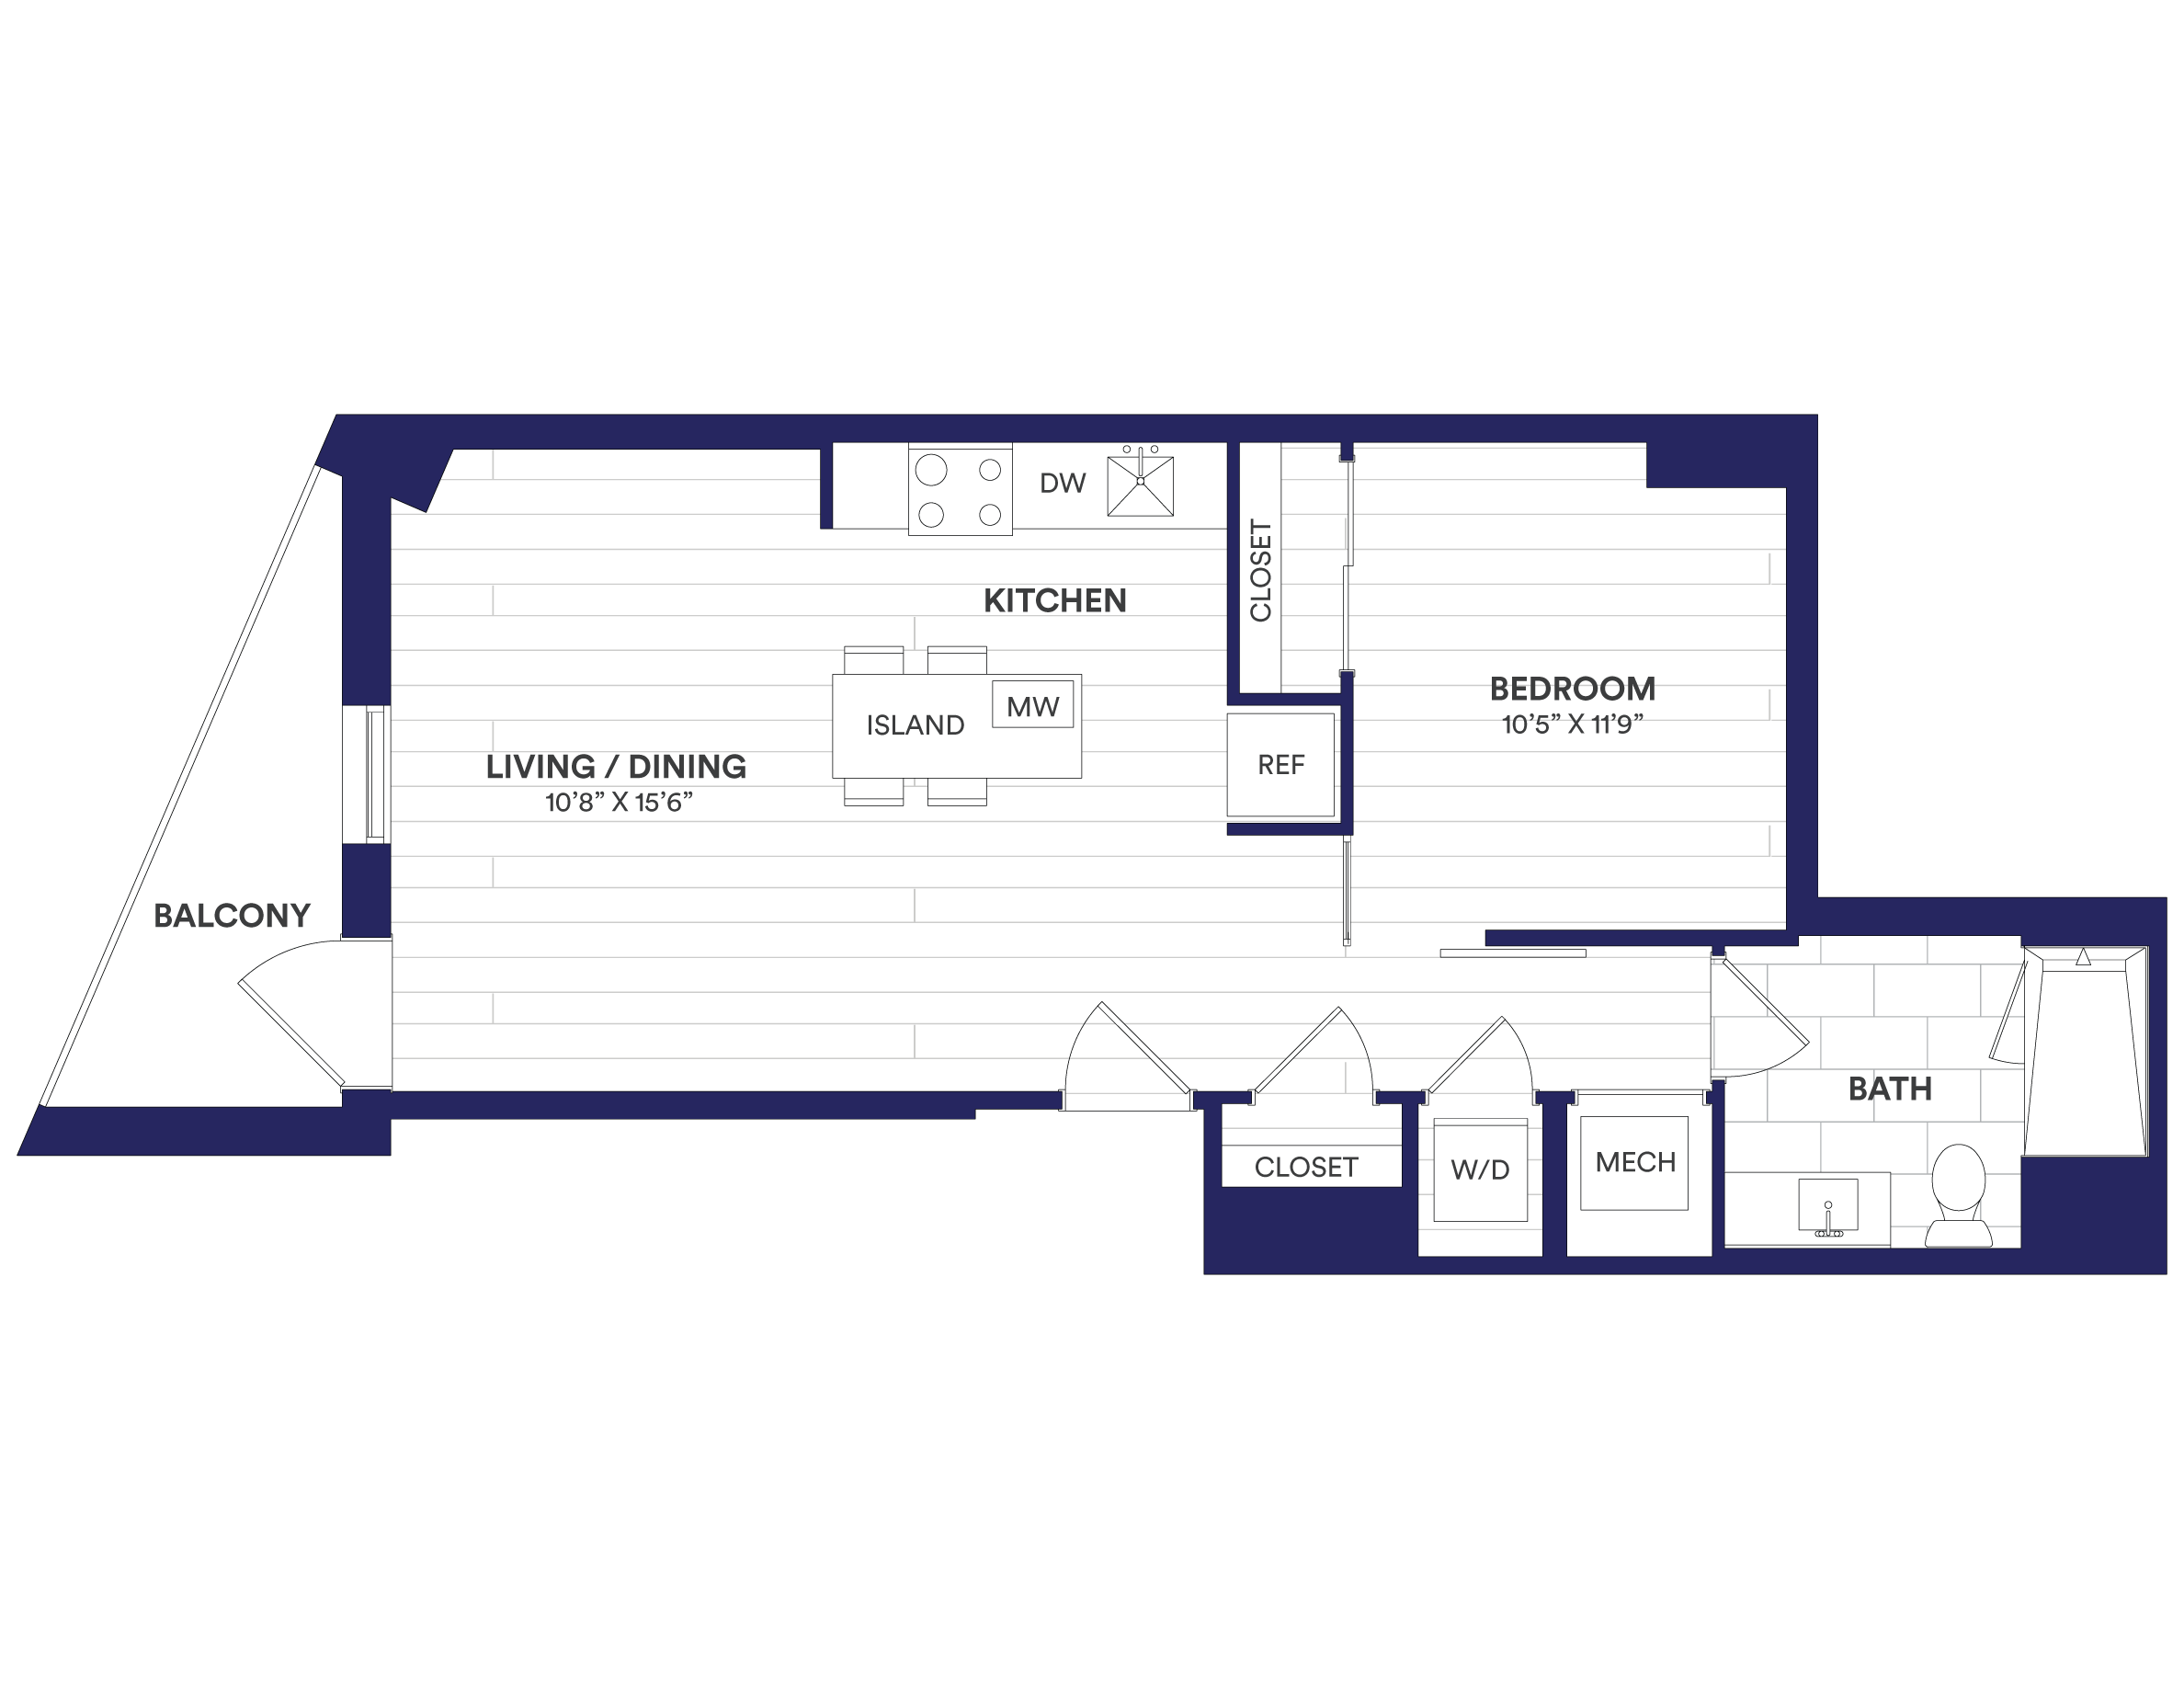 floorplan enlarge view